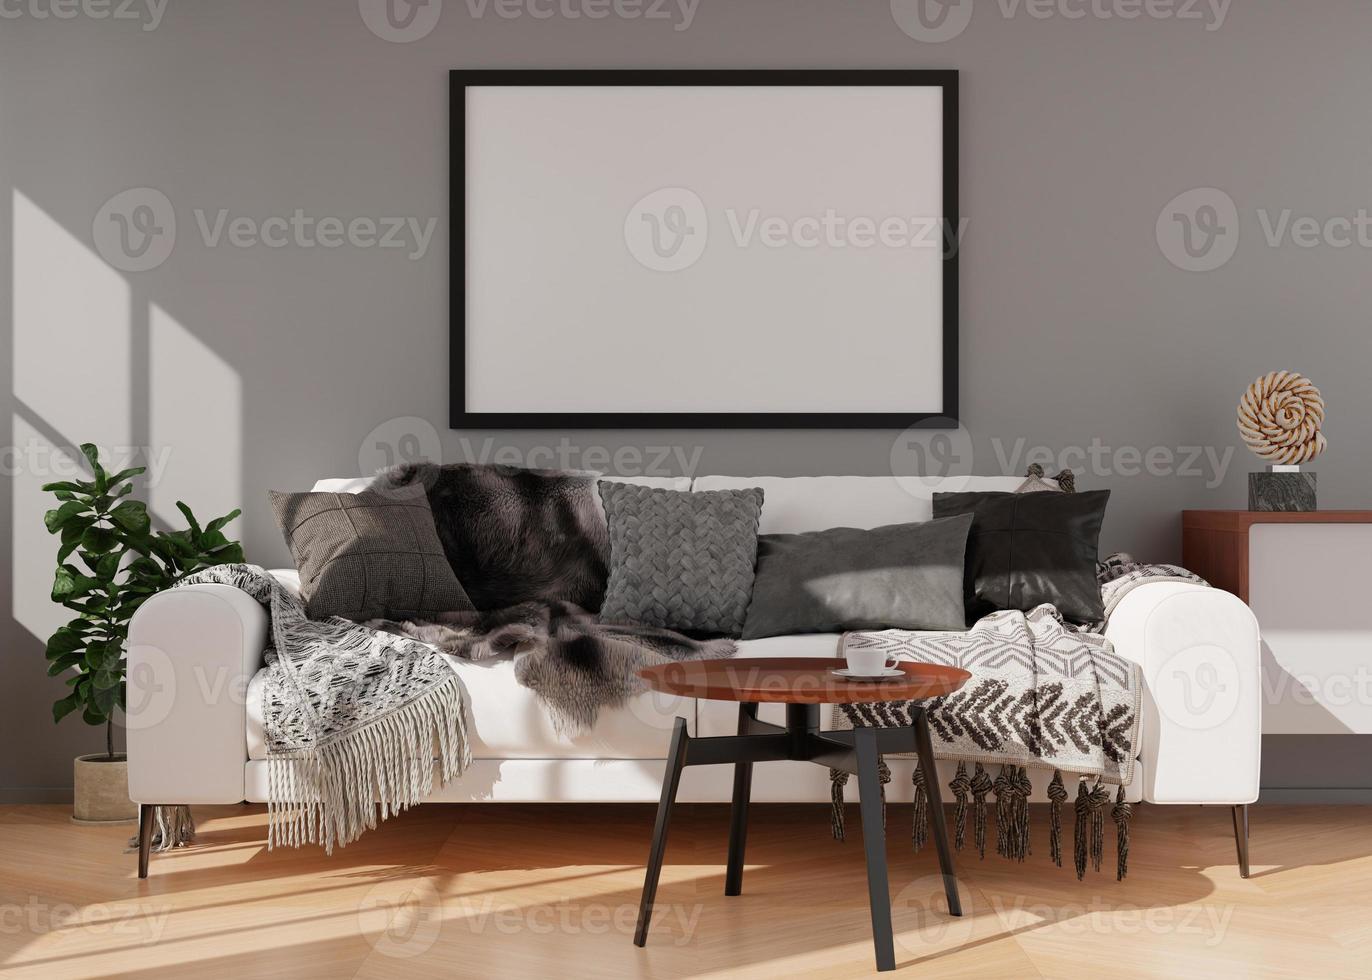 marco de imagen negro vacío en la pared gris en la sala de estar moderna. maqueta interior en estilo contemporáneo. espacio libre, copie el espacio para su imagen, póster. sofá, aparador, planta. representación 3d foto